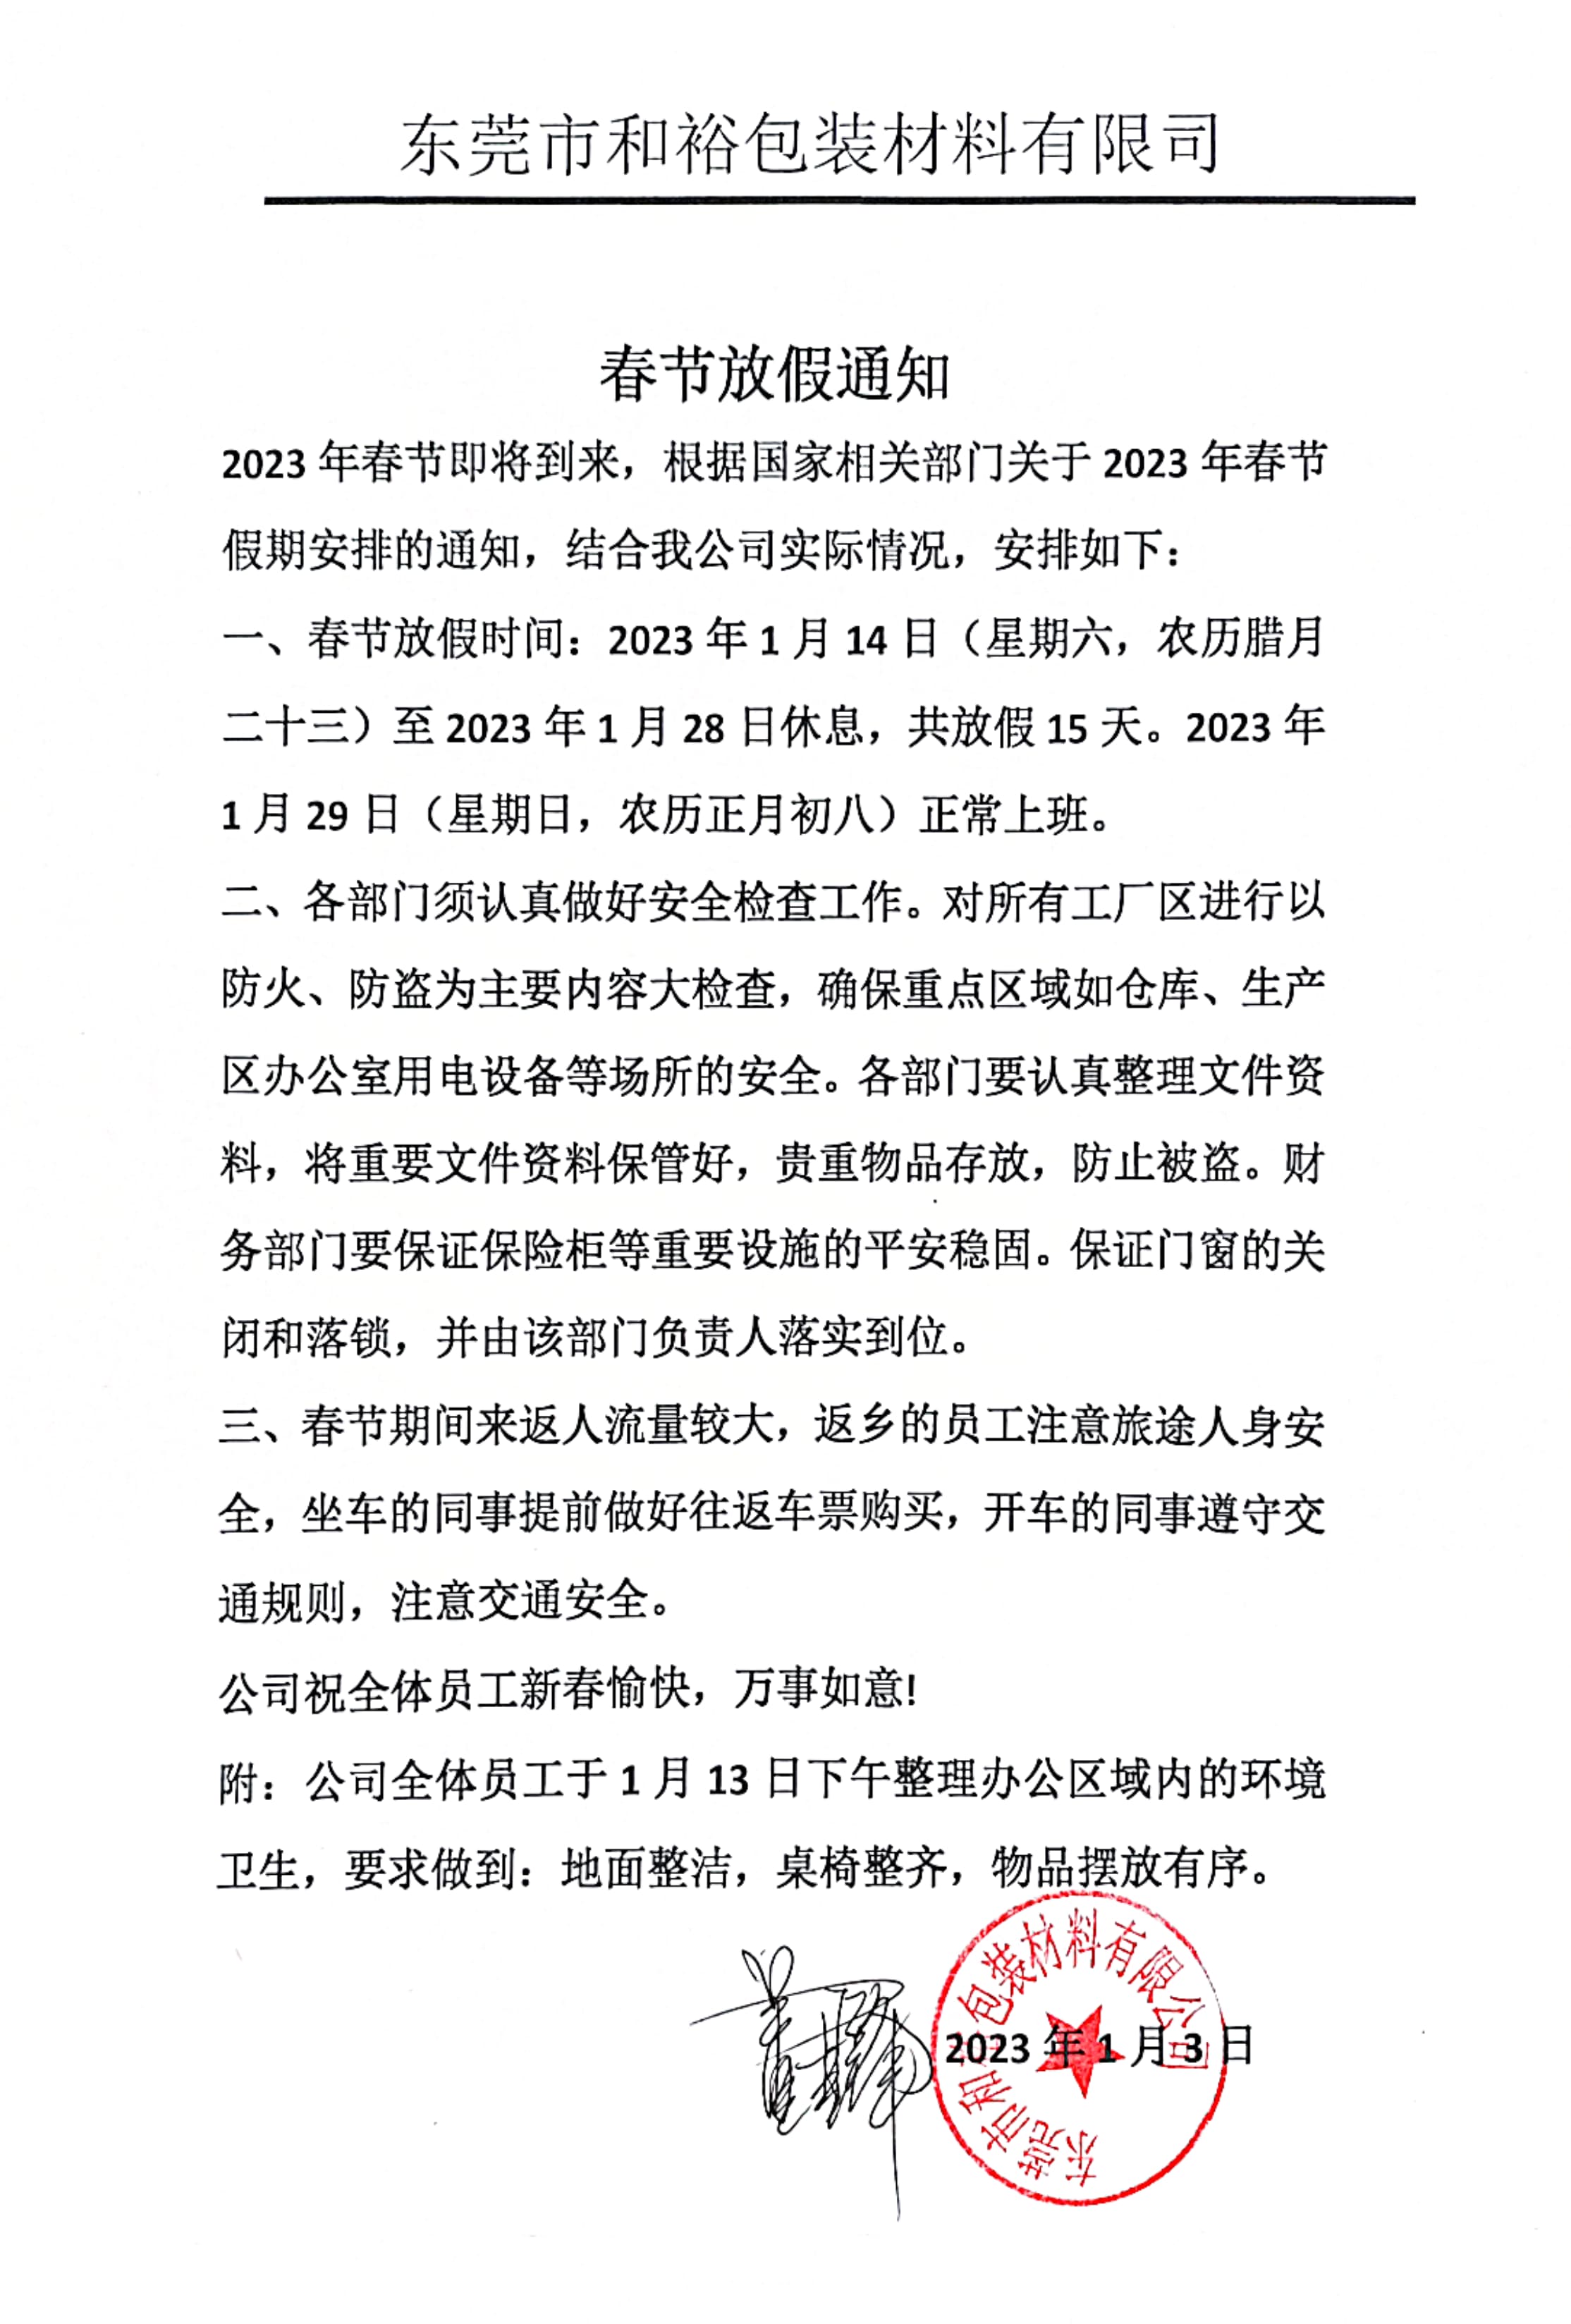 邵阳市2023年和裕包装春节放假通知